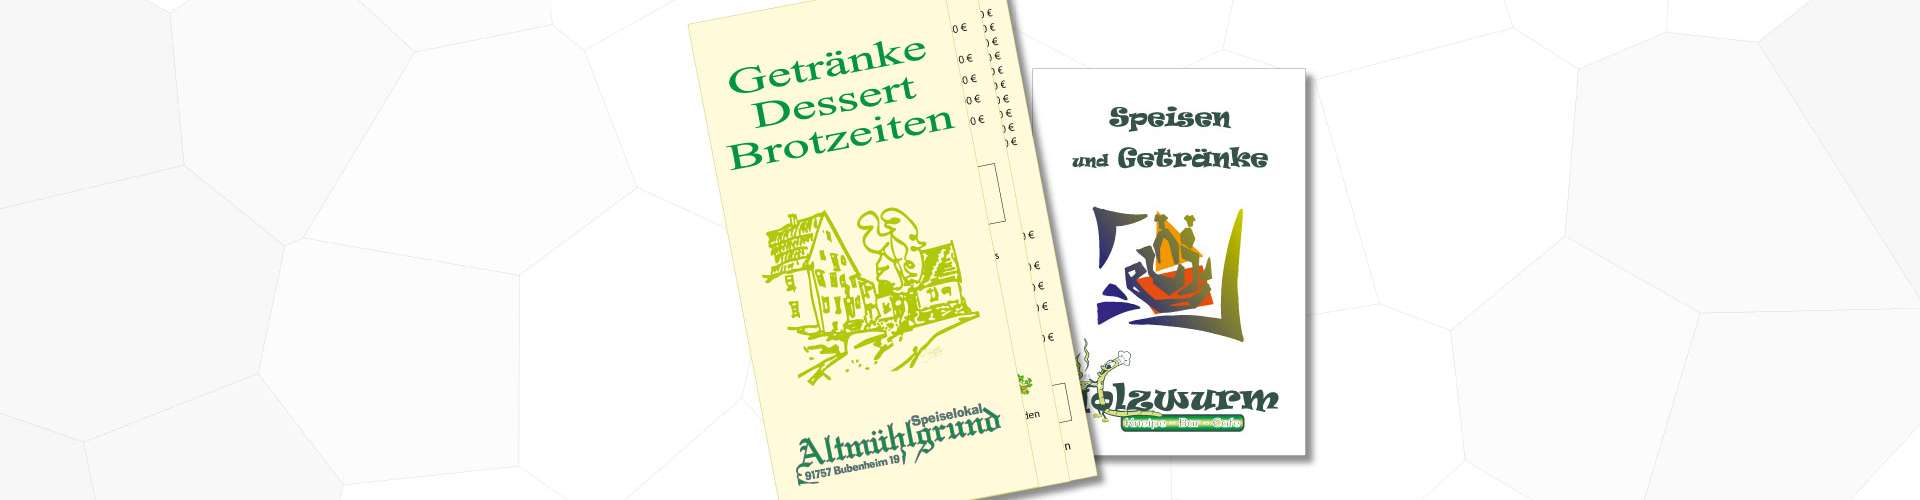 Die Gastroprodukte fuer comercial Gastronomie und Werbedesign.